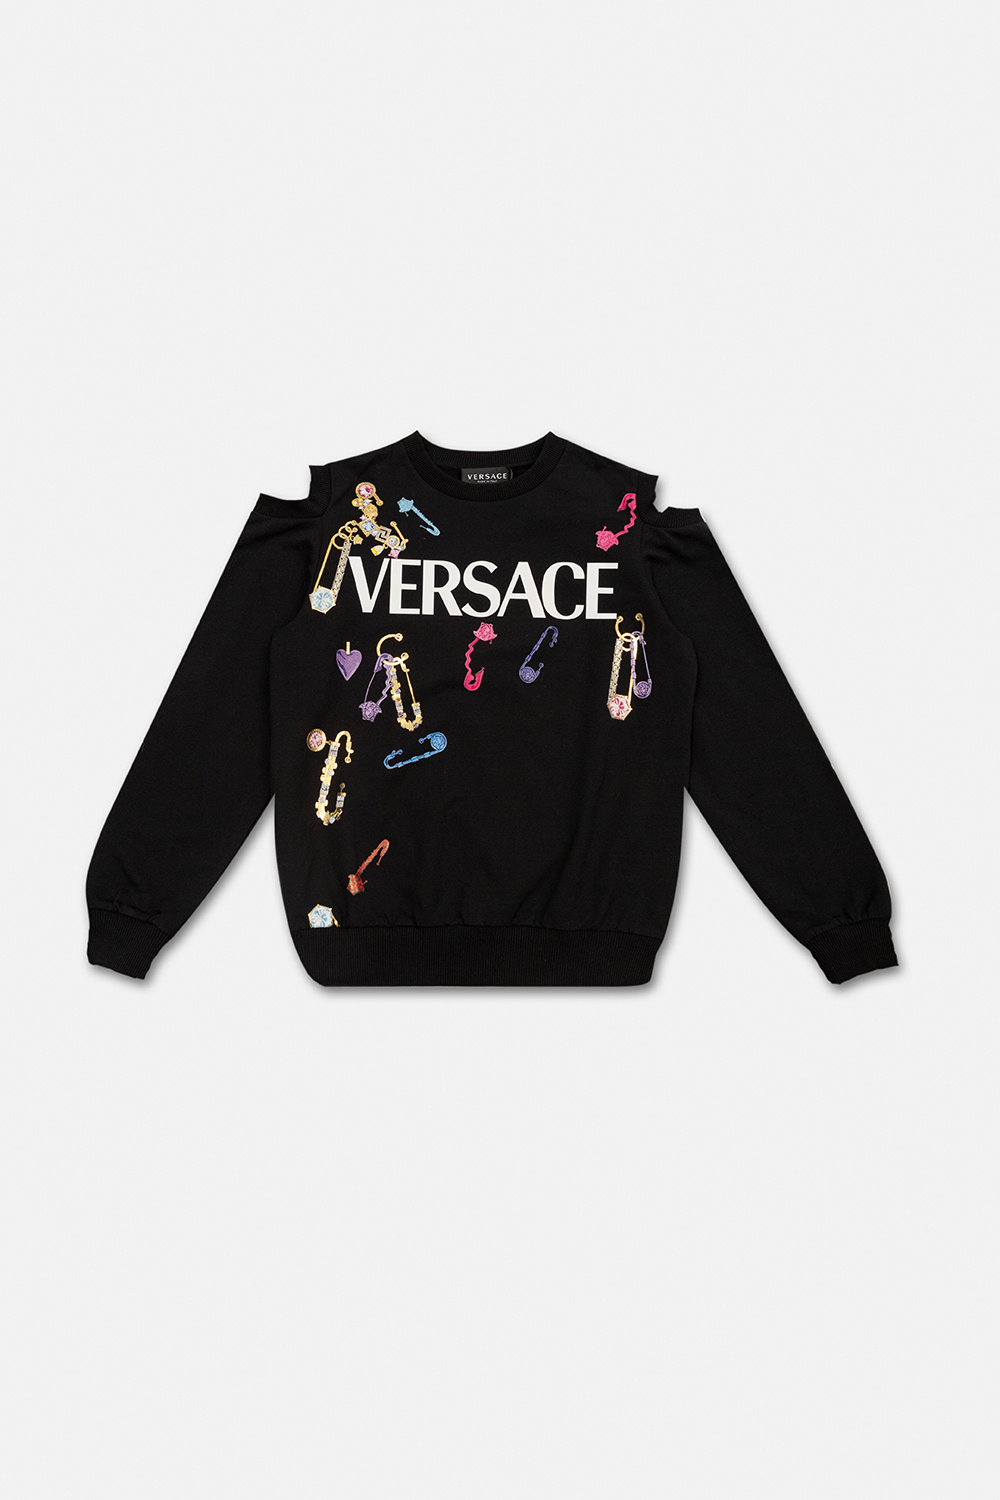 Versace Kids Hype Paint T Shirt